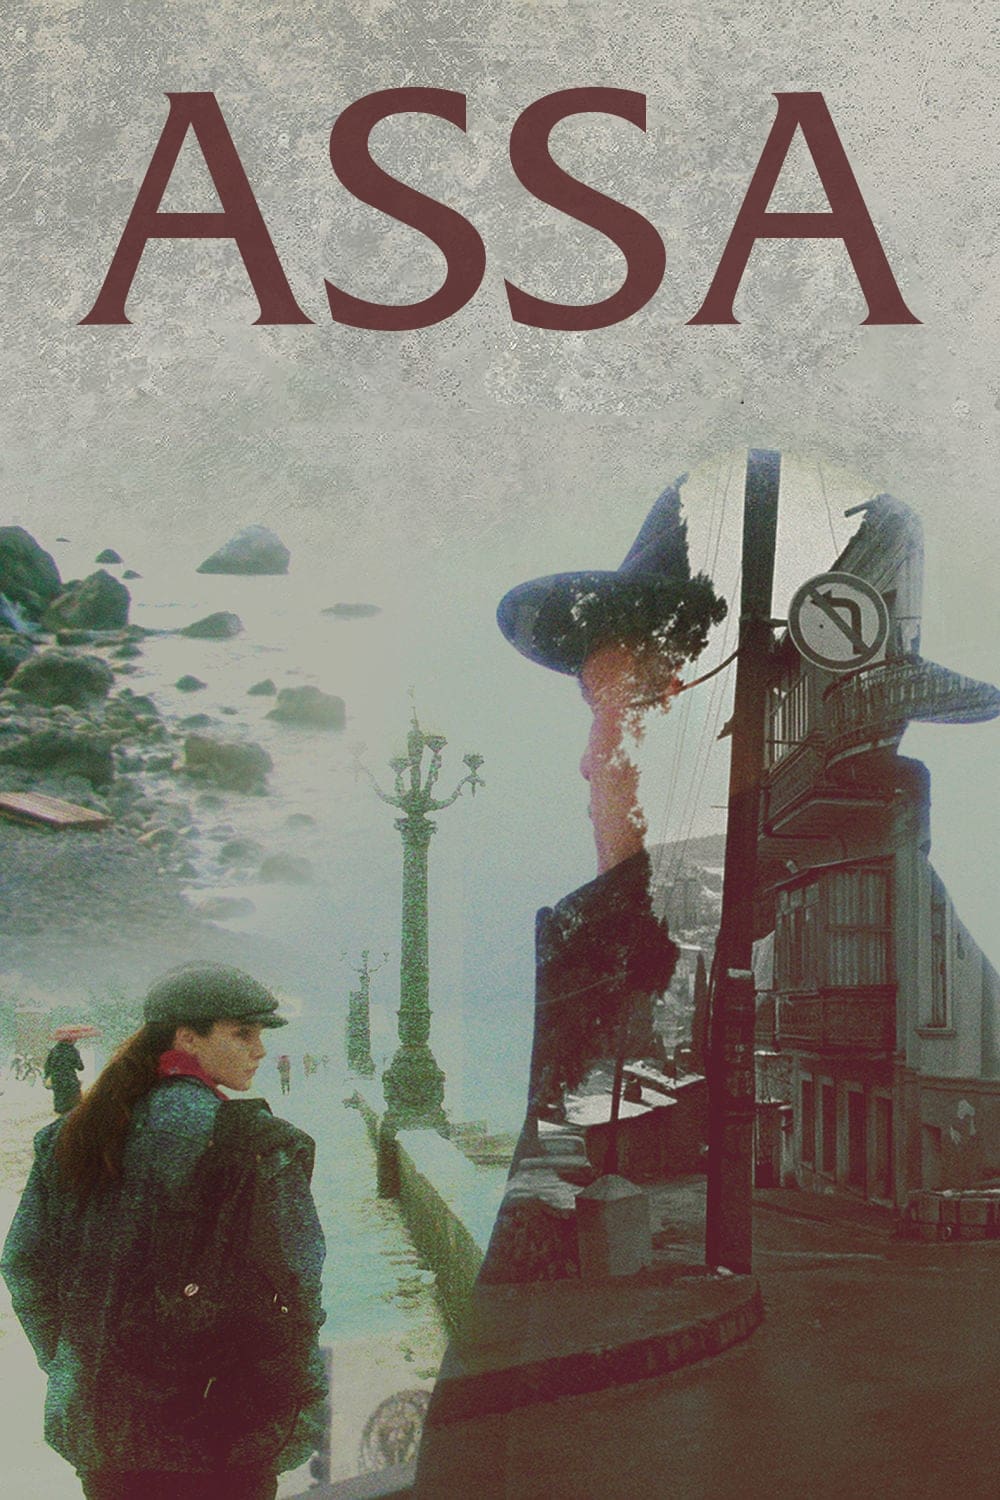 Assa (1987)